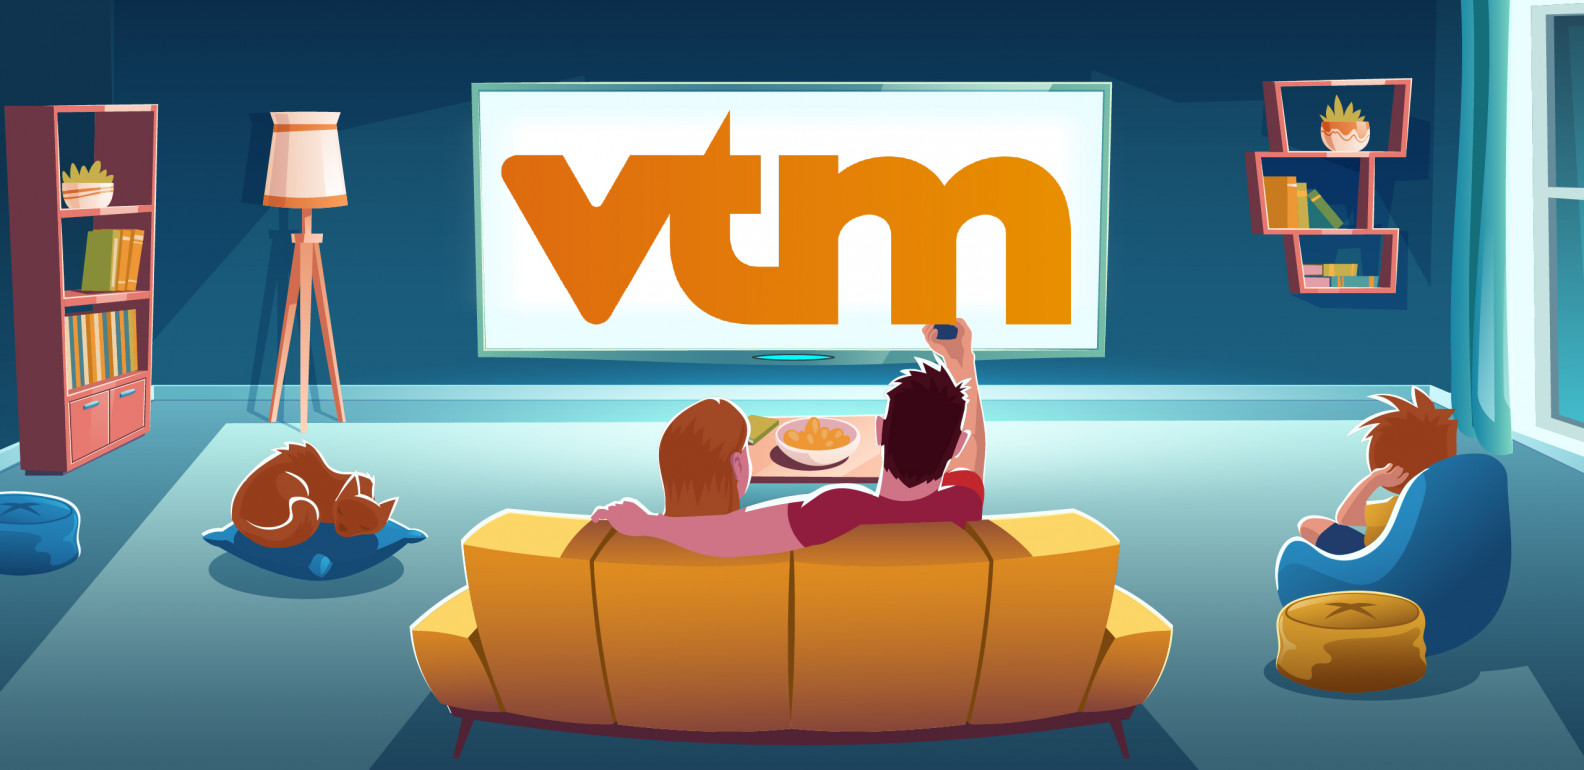 Hoe deblokkeer ik alles van VTM in Nederland?